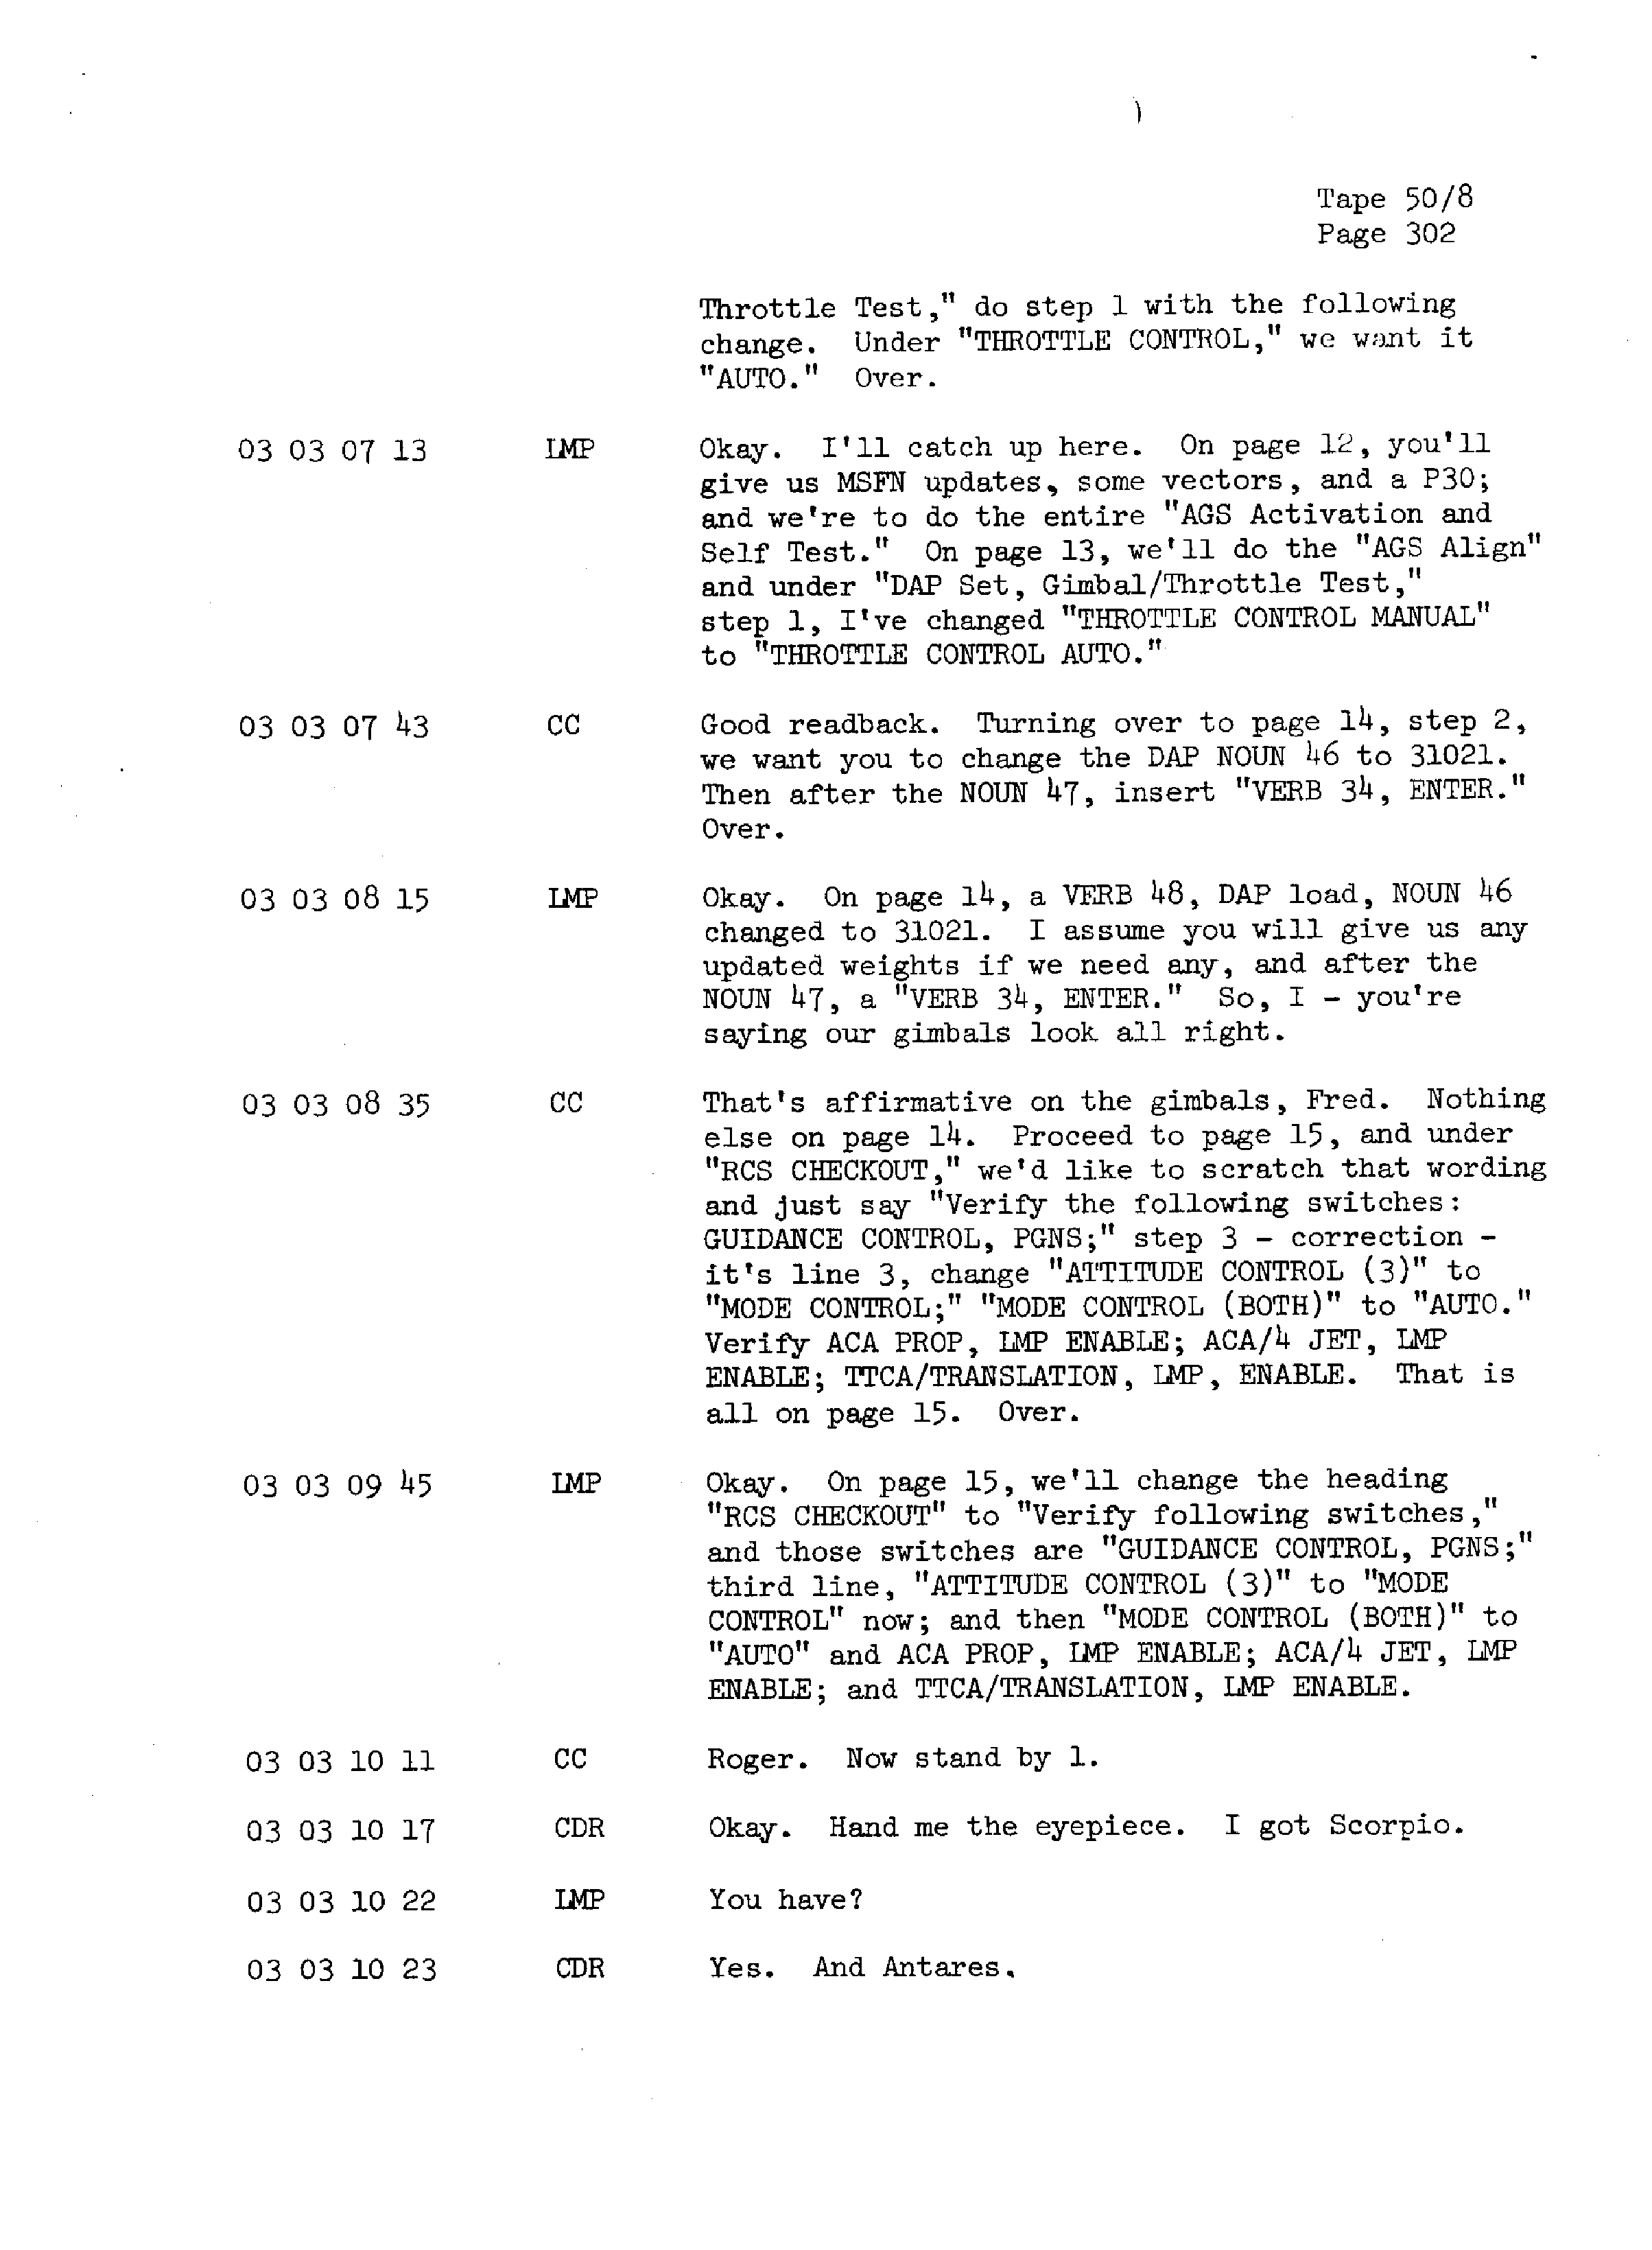 Page 309 of Apollo 13’s original transcript